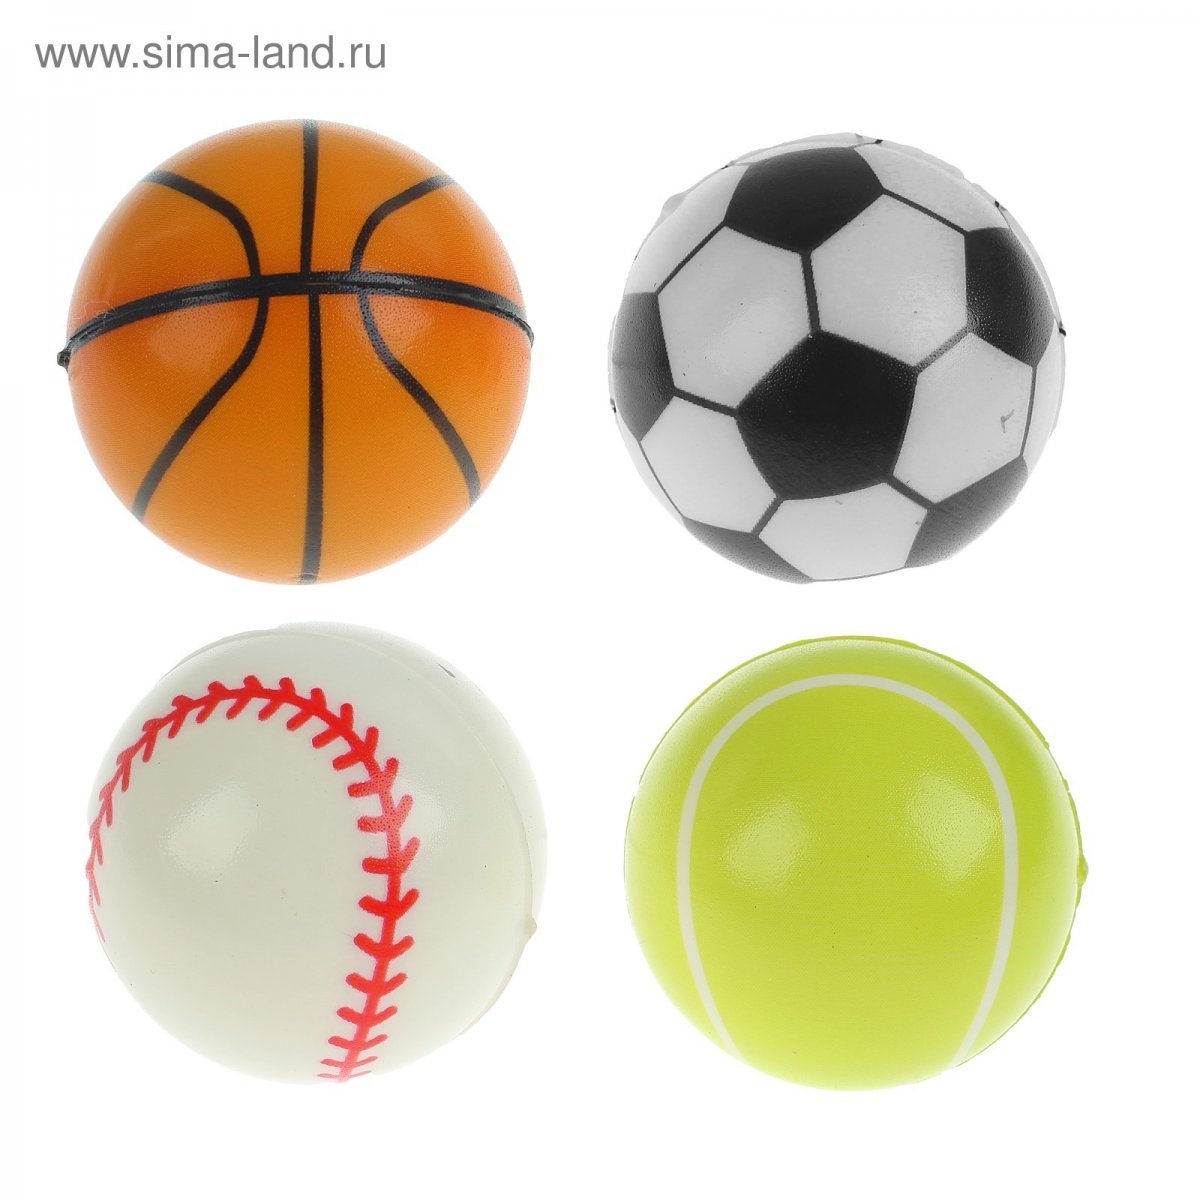 Спортивные мячи для разных видов спорта